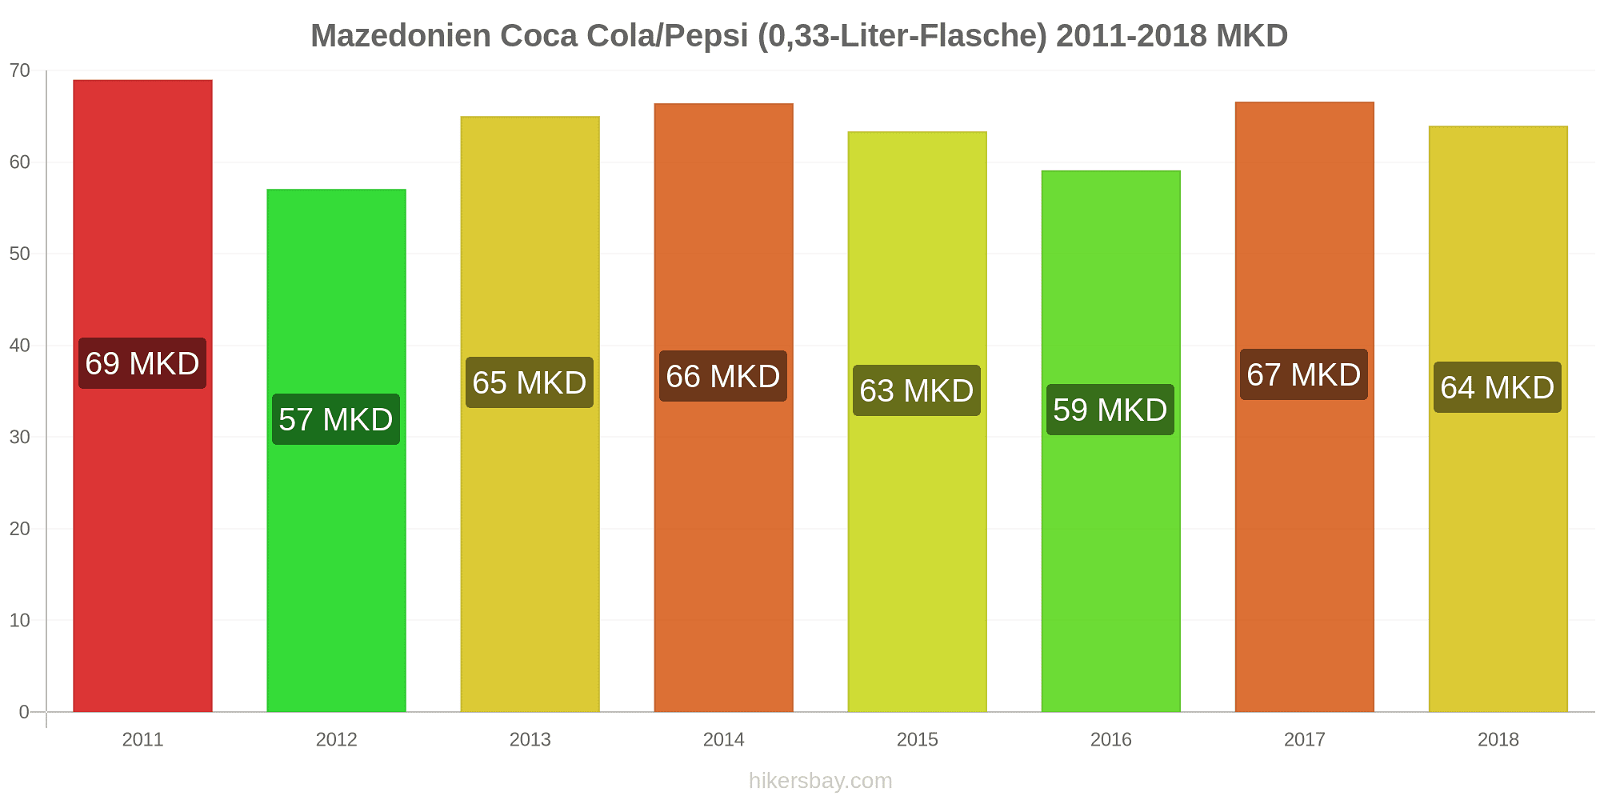 Mazedonien Preisänderungen Coke/Pepsi (0,33-Liter-Flasche) hikersbay.com